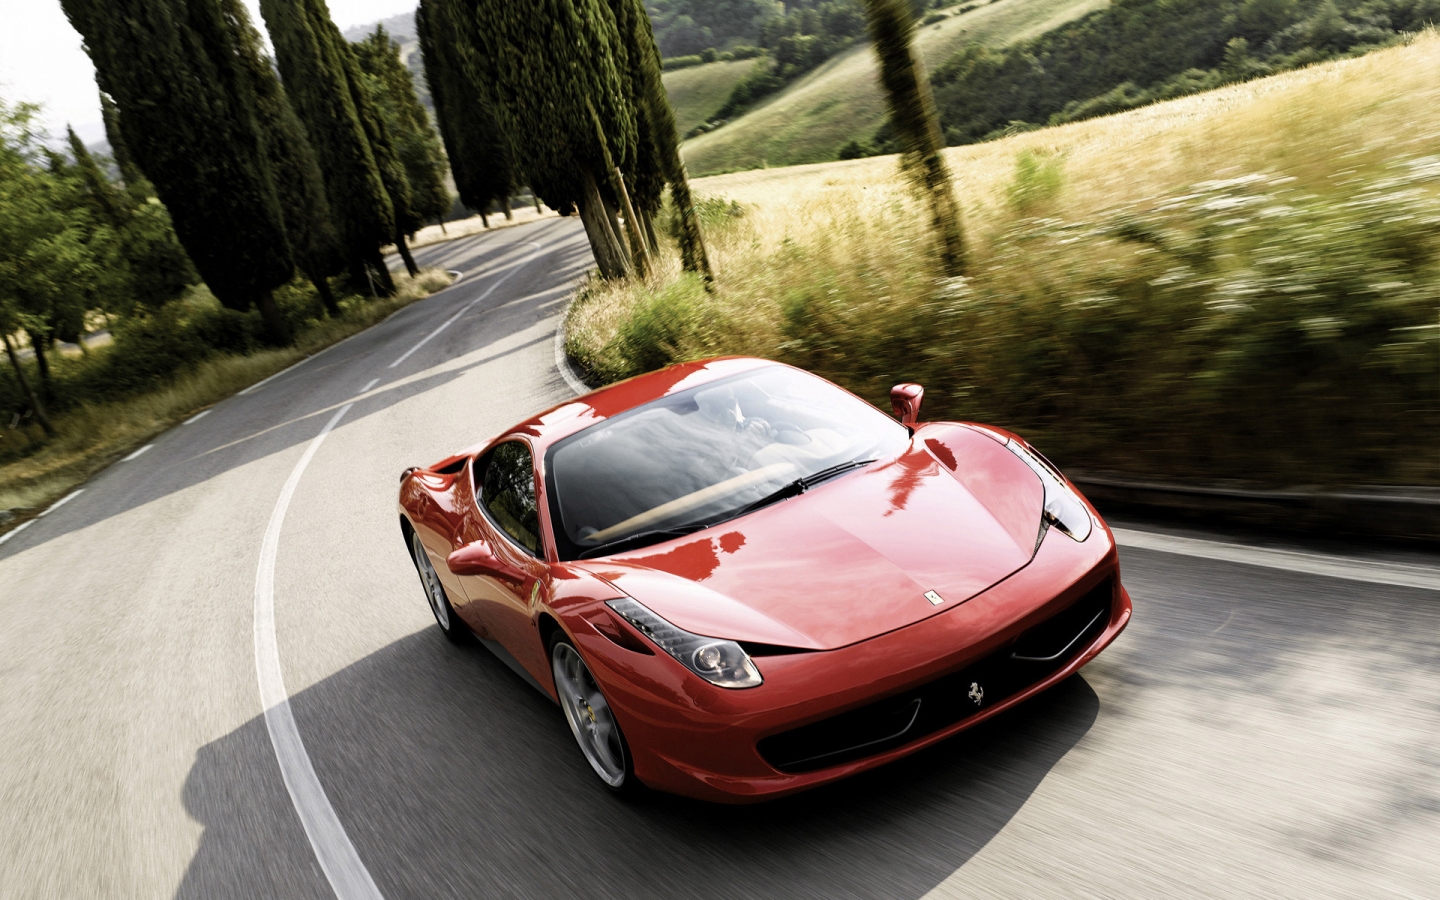 Ferrari 458 2011 Speed for 1440 x 900 widescreen resolution